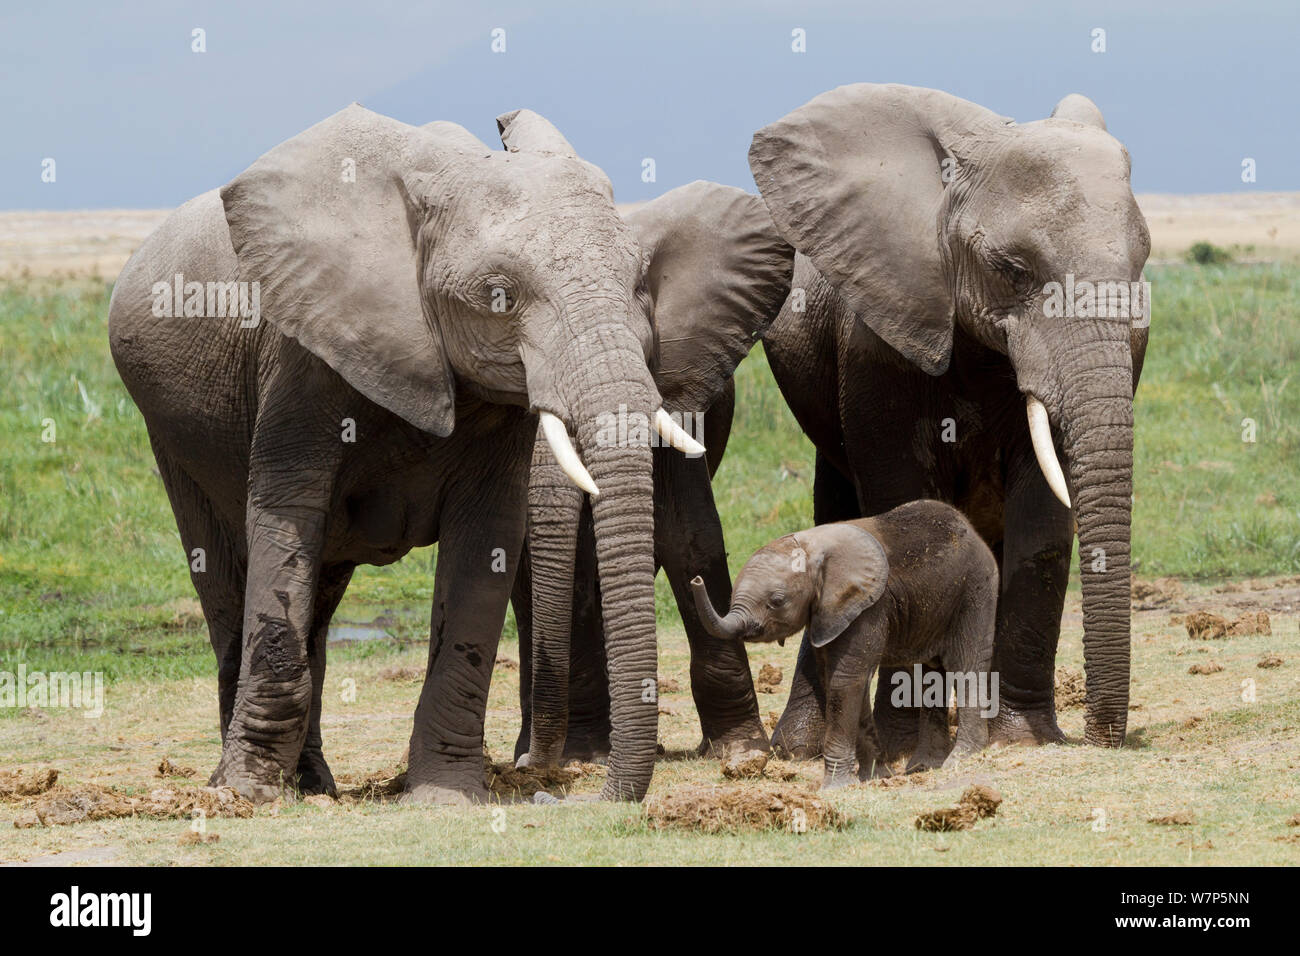 L'éléphant africain (Loxodonta africana) bébé protégé par le groupe de femelles. Le Parc national Amboseli, au Kenya. Banque D'Images